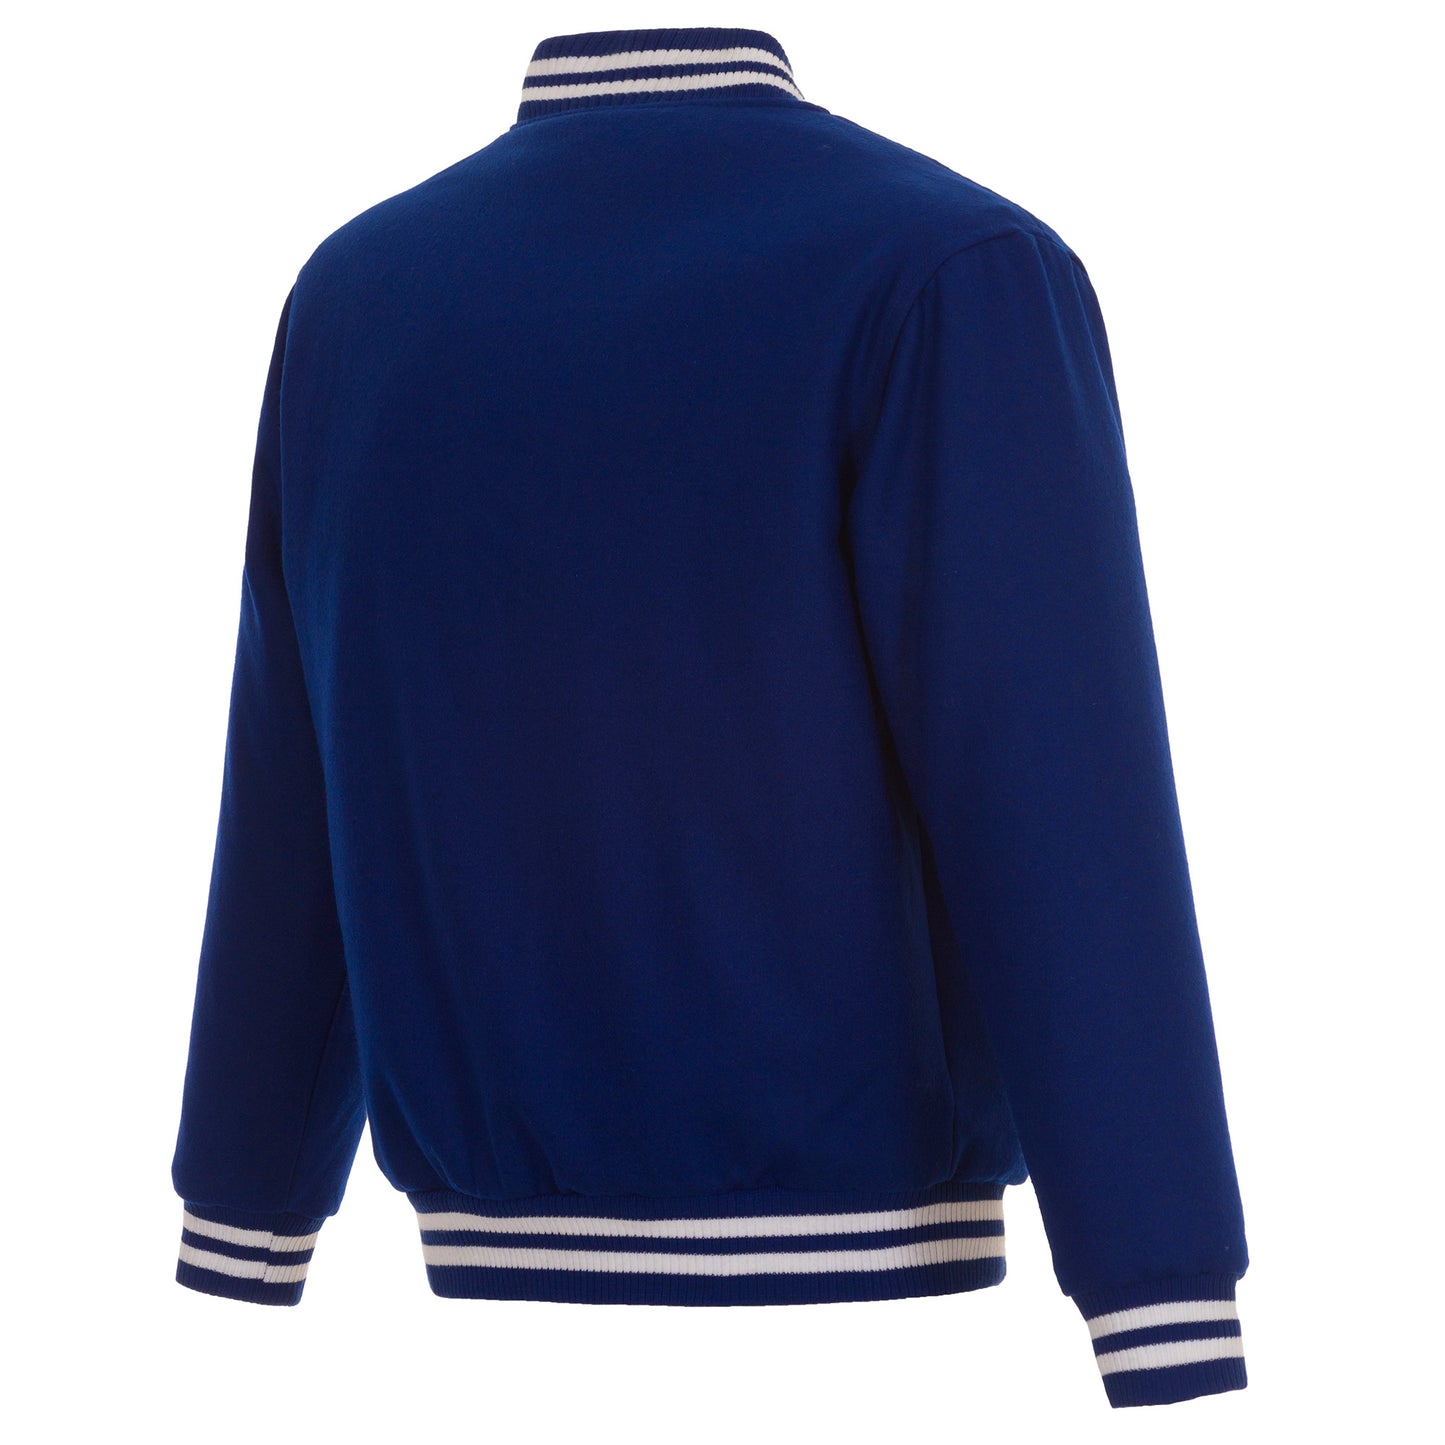 Los Angeles Rams All-Wool Reversible Jacket